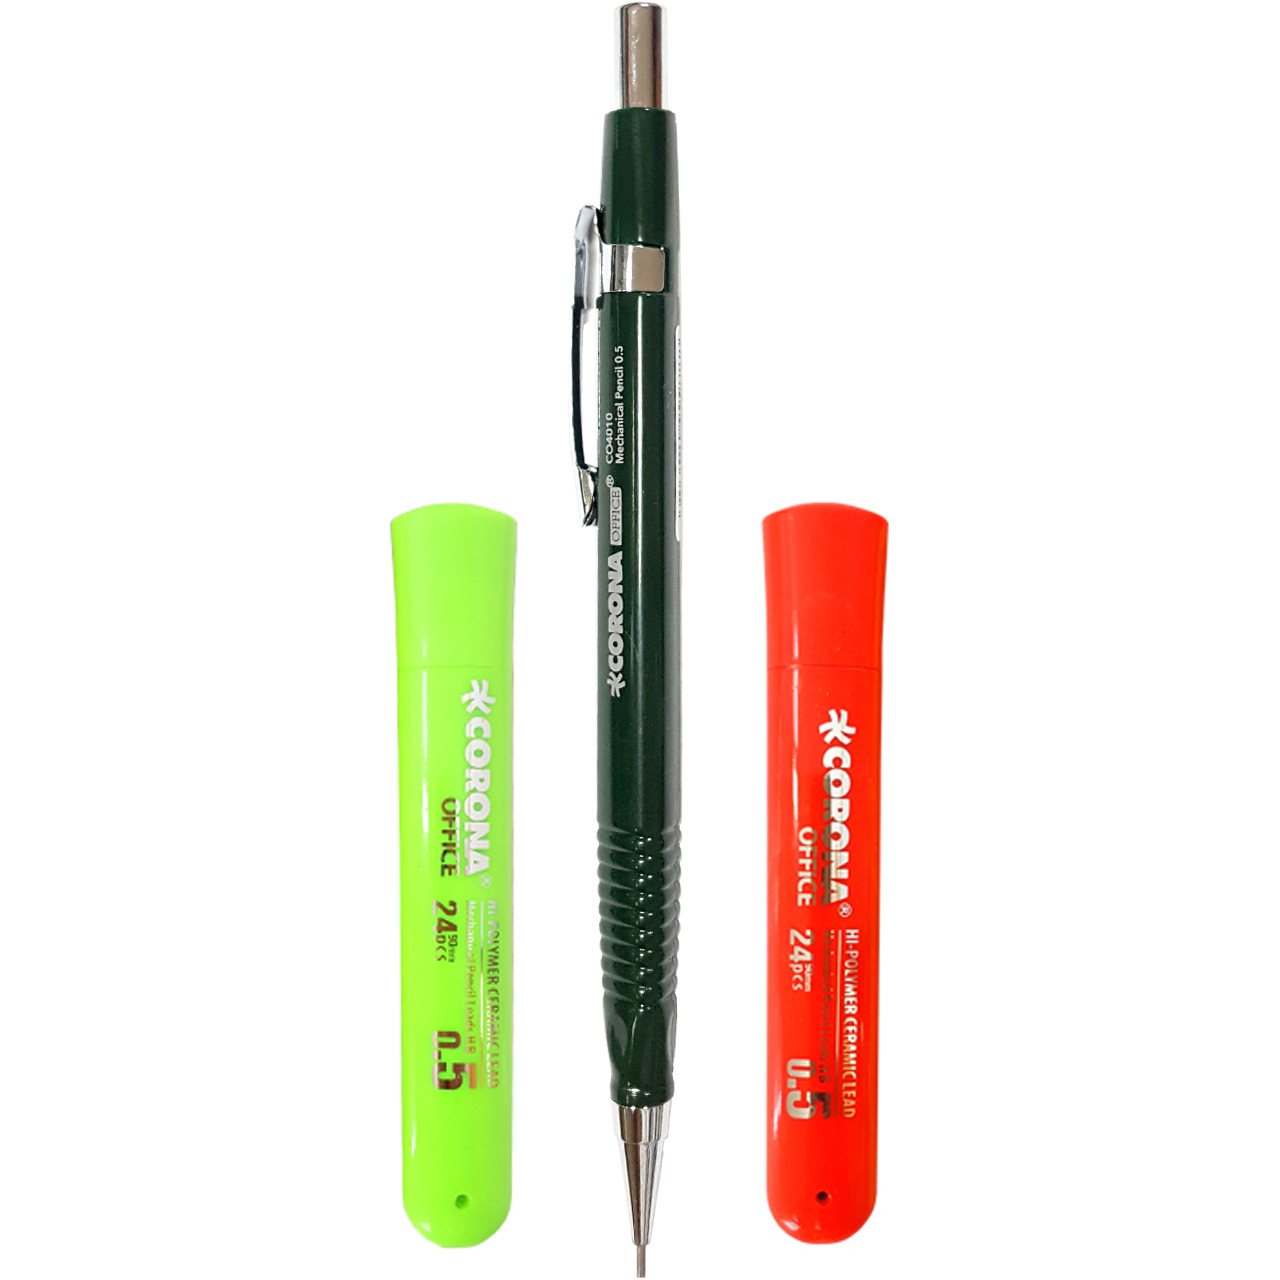 مداد نوکی 0.5 میلی متری کورونا مدل 503 به همراه نوک مداد نوکی 0.5 میلی متری کورونا کد 303 بسته 2 عددی